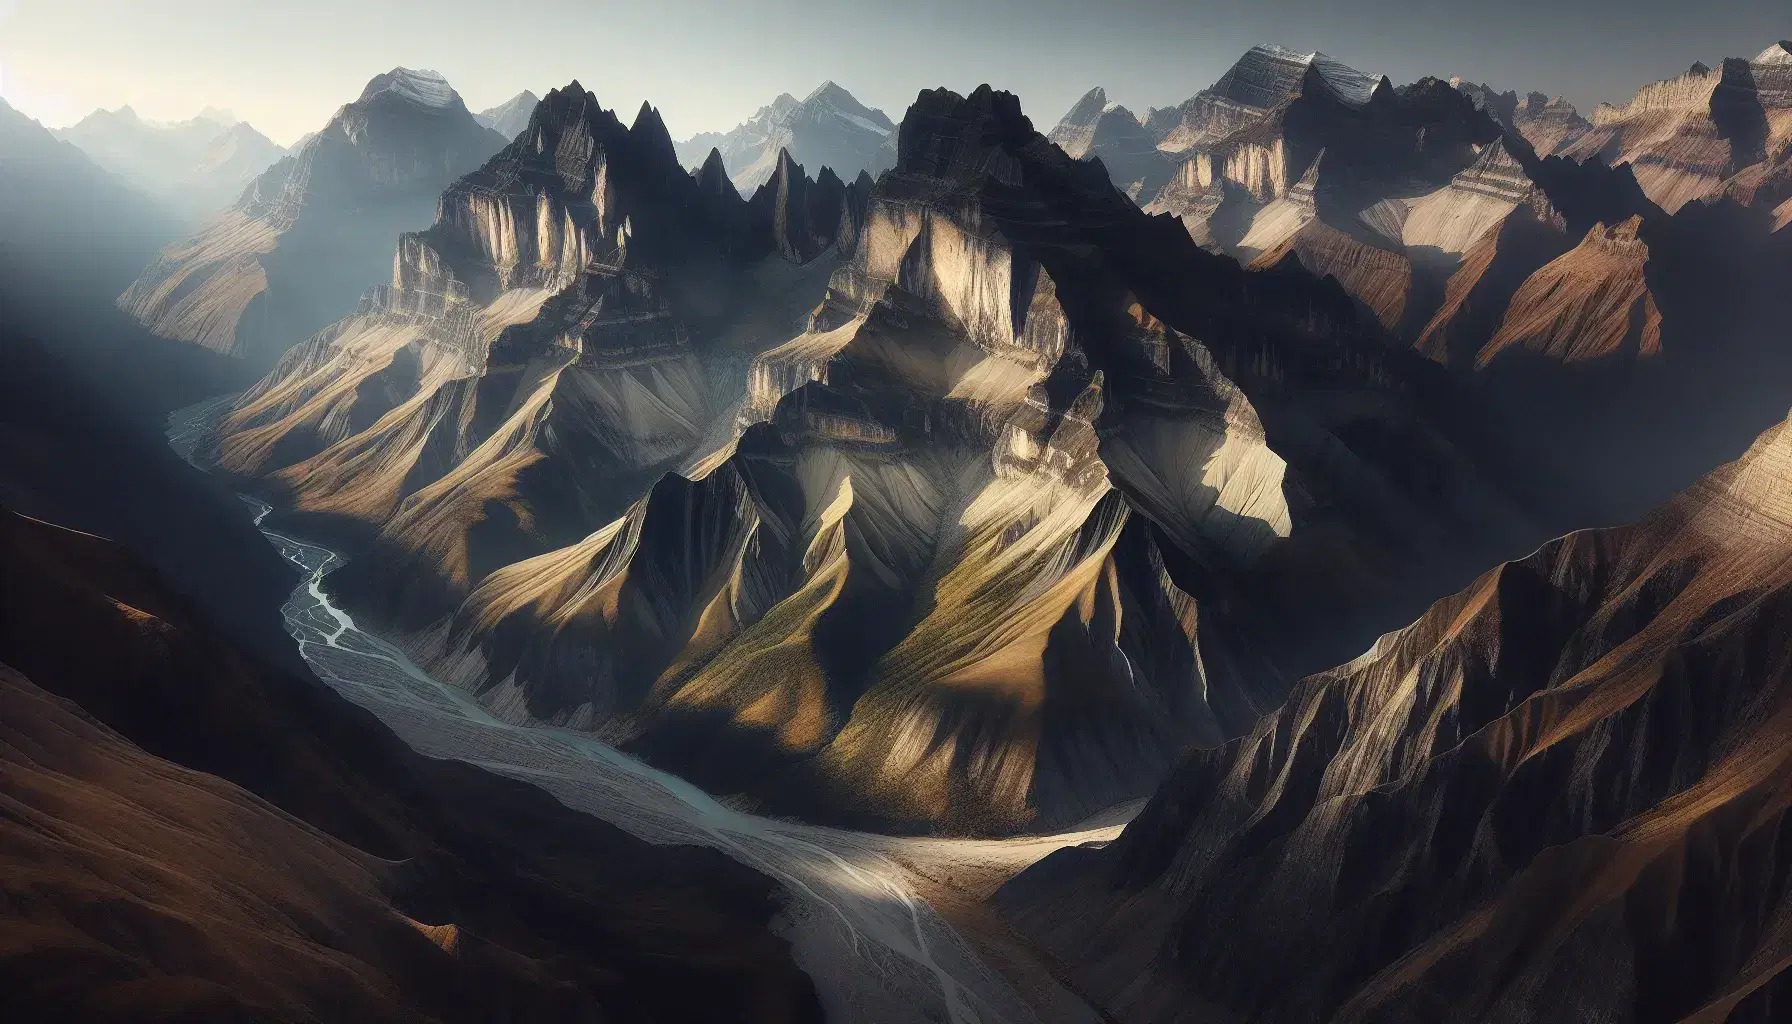 Vista aérea de una cadena montañosa con picos altos y valles profundos, río serpenteante azul claro y capas de roca expuestas en tonos beige a grises.